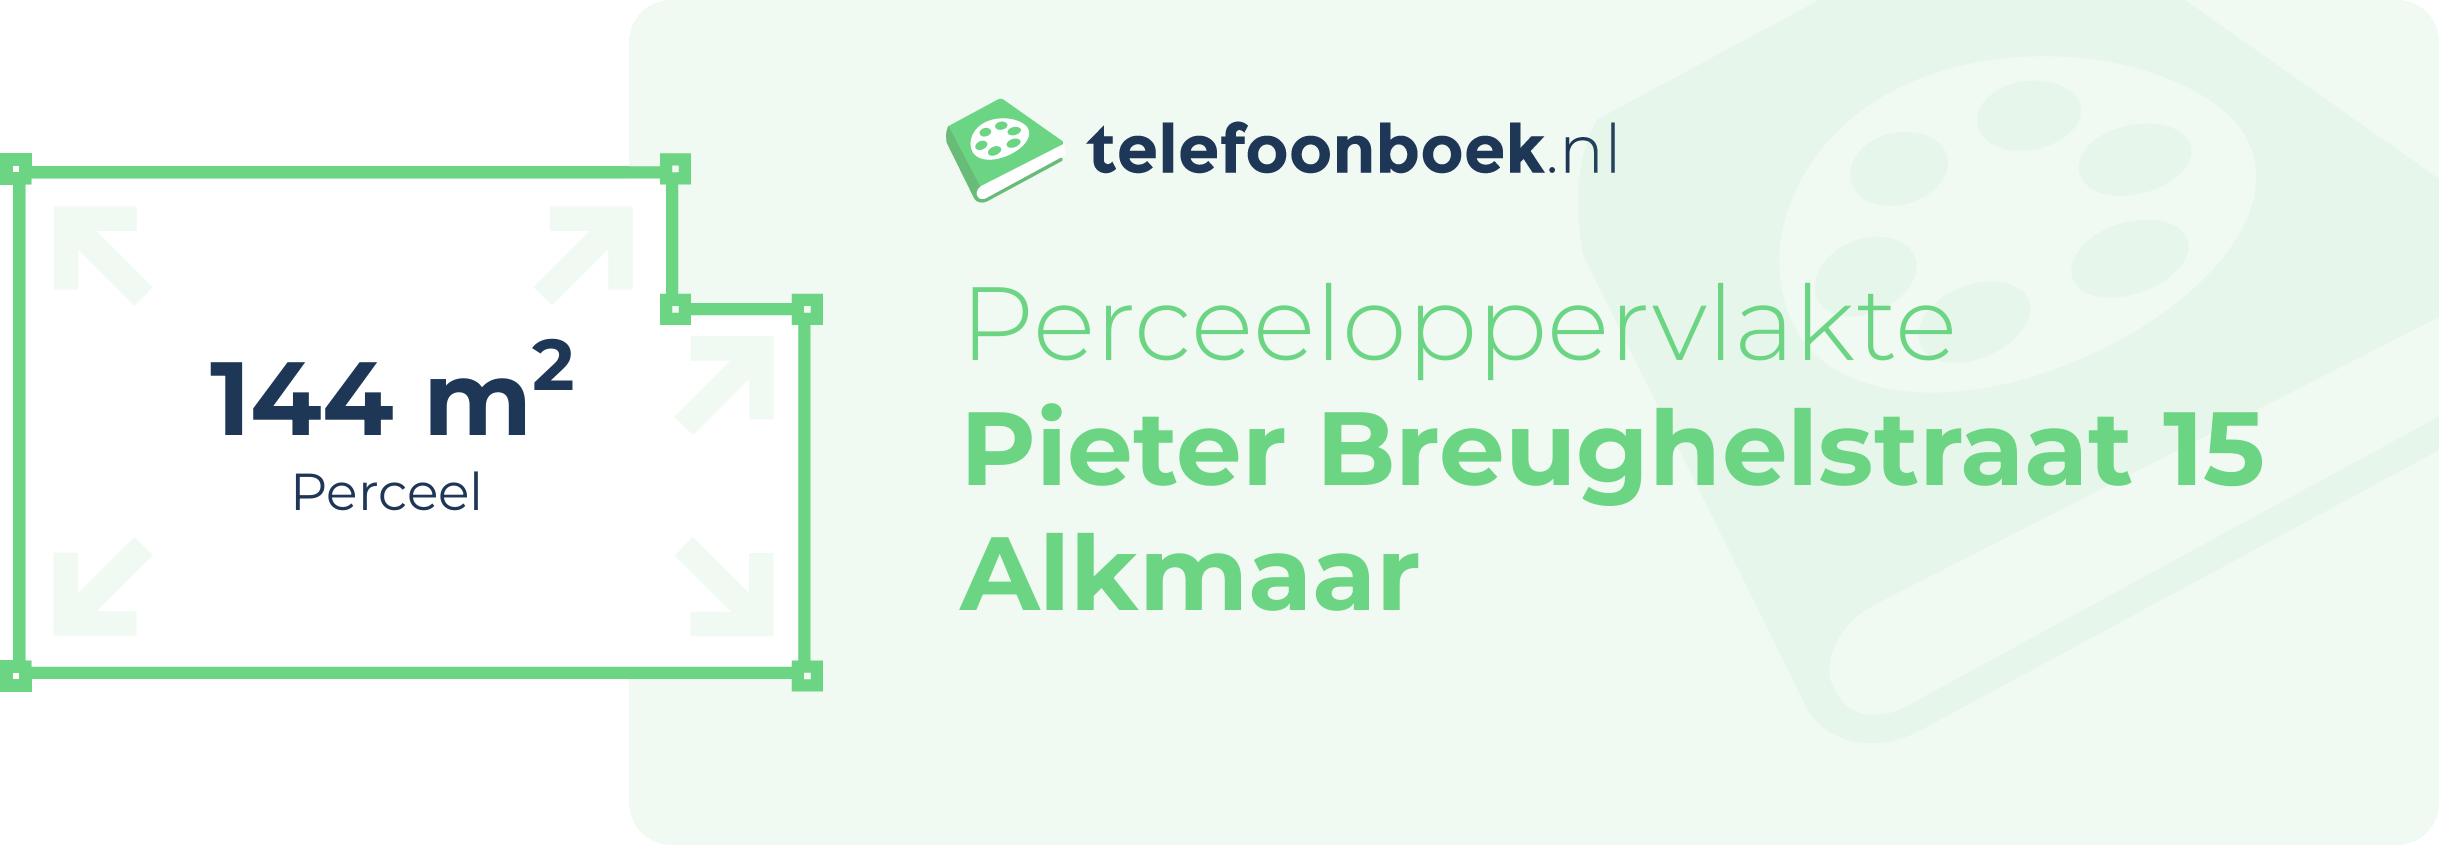 Perceeloppervlakte Pieter Breughelstraat 15 Alkmaar